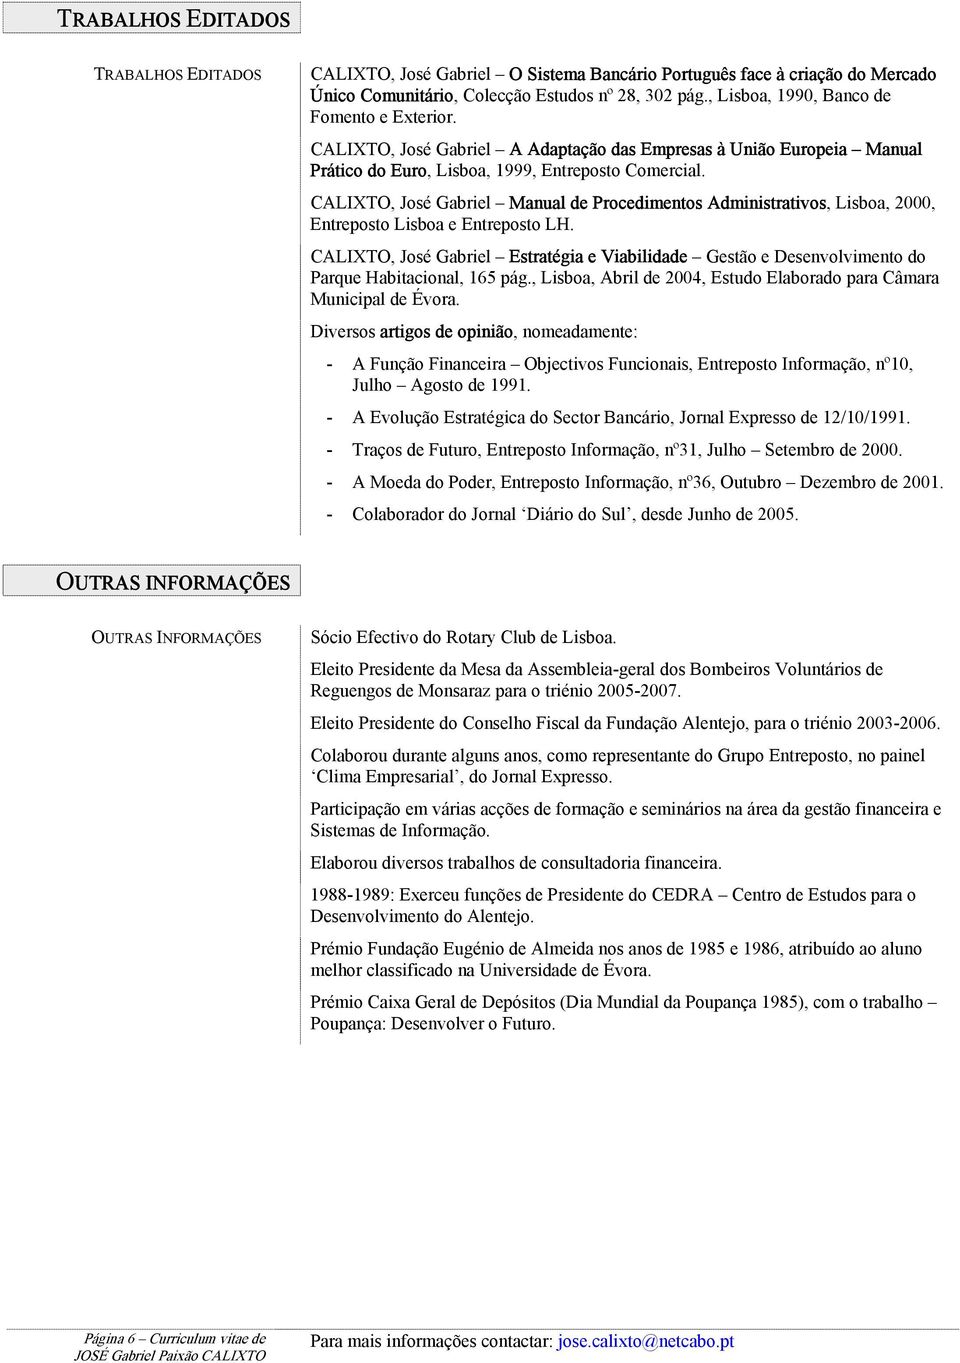 CALIXTO, José Gabriel Manual de Procedimentos Administrativos, Lisboa, 2000, Entreposto Lisboa e Entreposto LH.